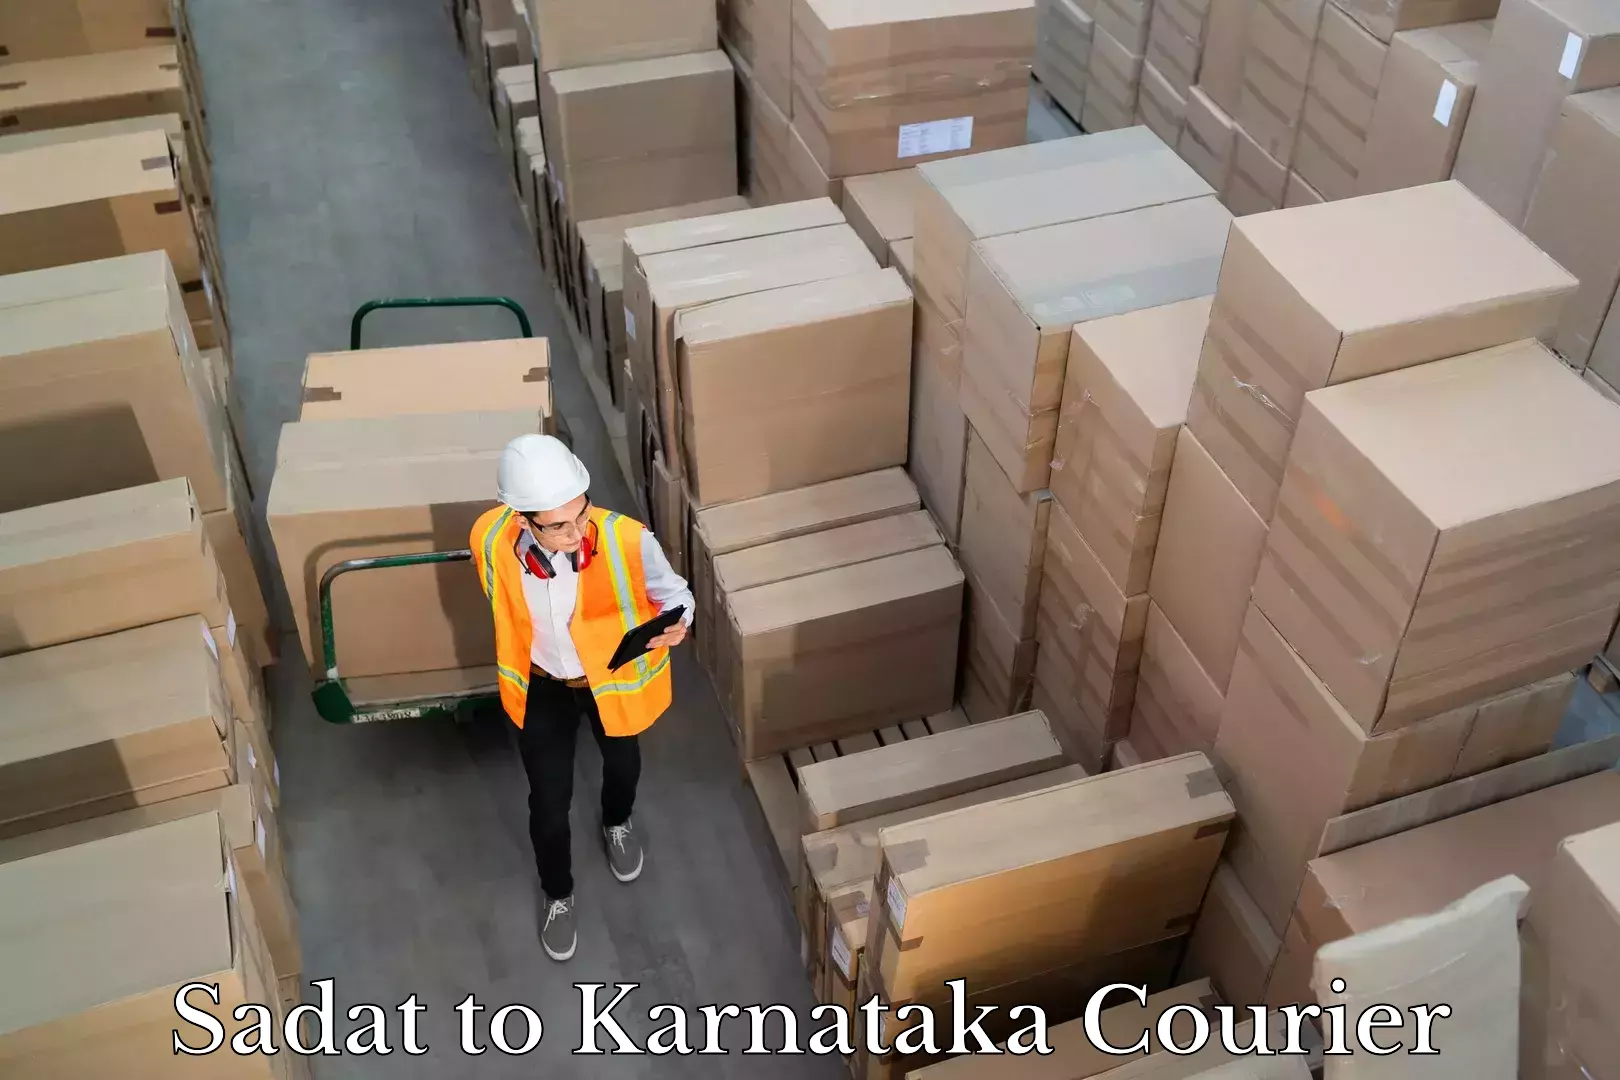 Individual parcel service Sadat to Karnataka